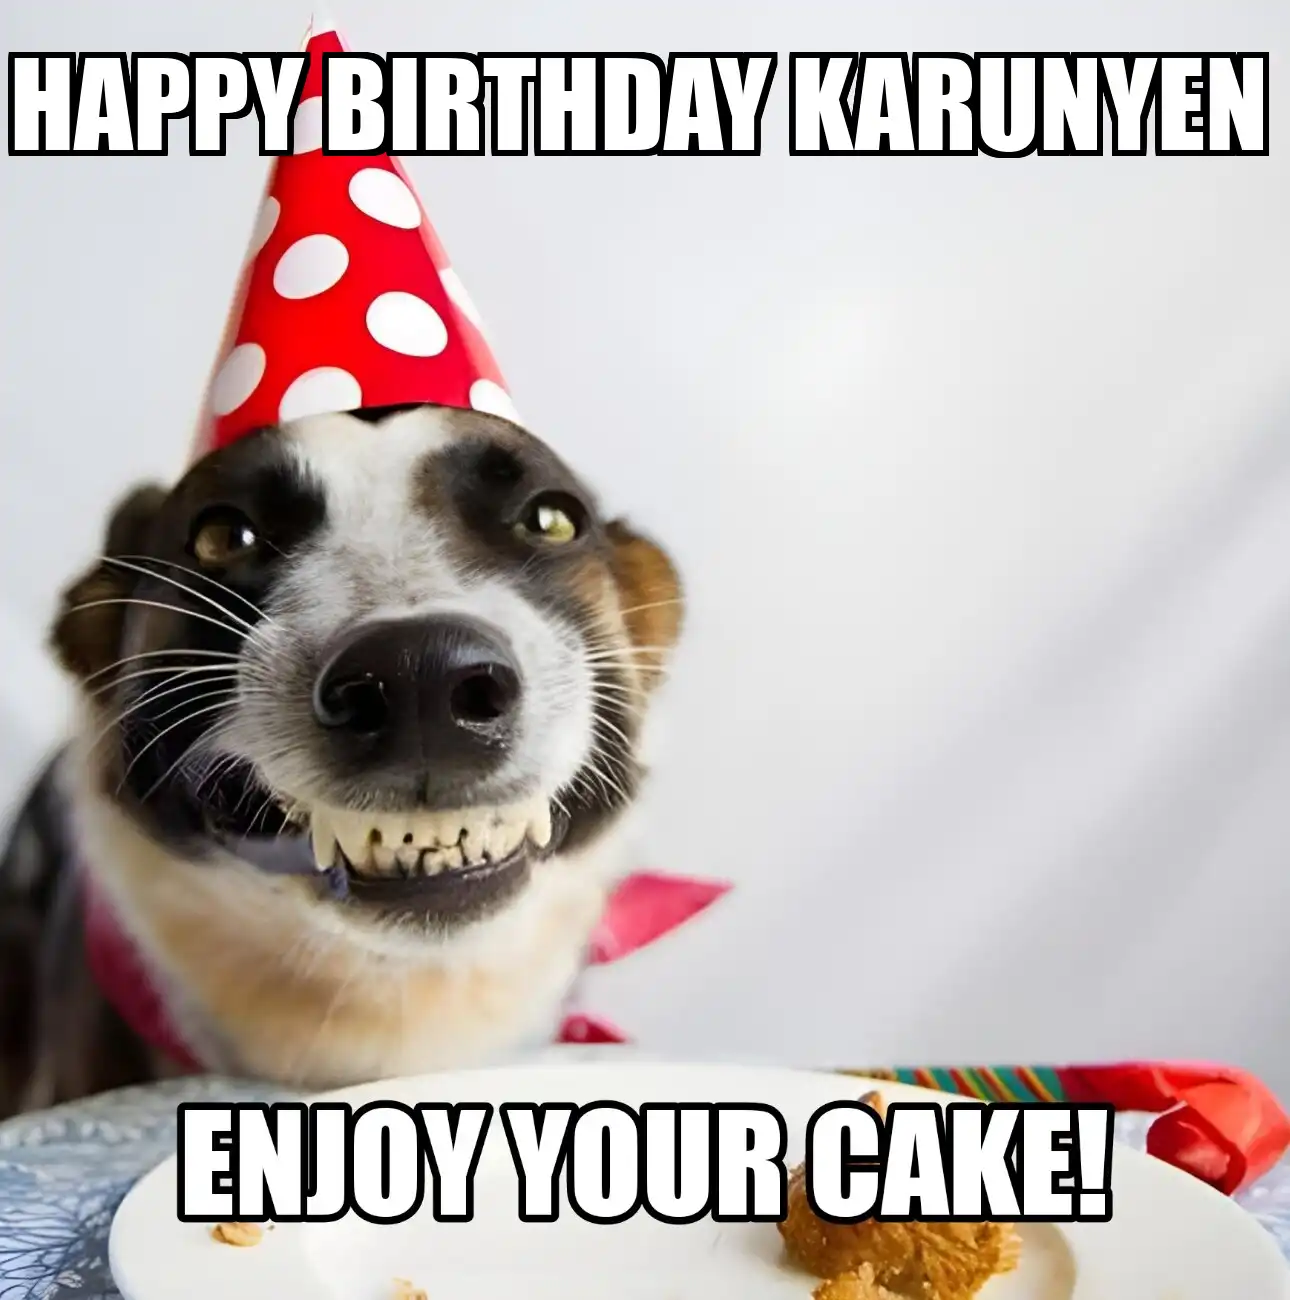 Happy Birthday Karunyen Enjoy Your Cake Dog Meme